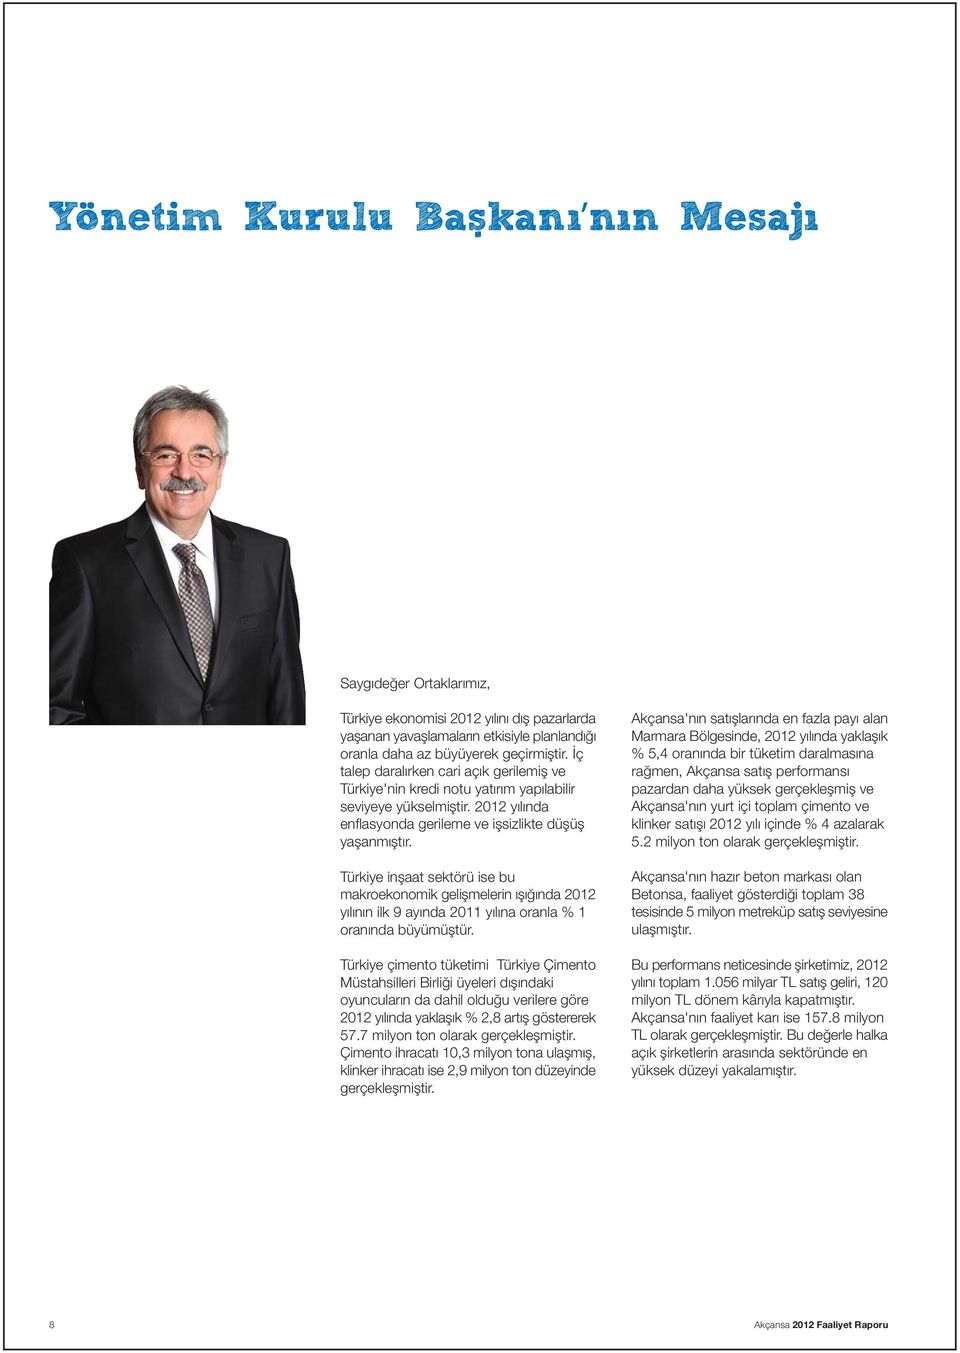 Türkiye inþaat sektörü ise bu makroekonomik geliþmelerin ýþýðýnda 2012 yýlýnýn ilk 9 ayýnda 2011 yýlýna oranla % 1 oranýnda büyümüþtür.